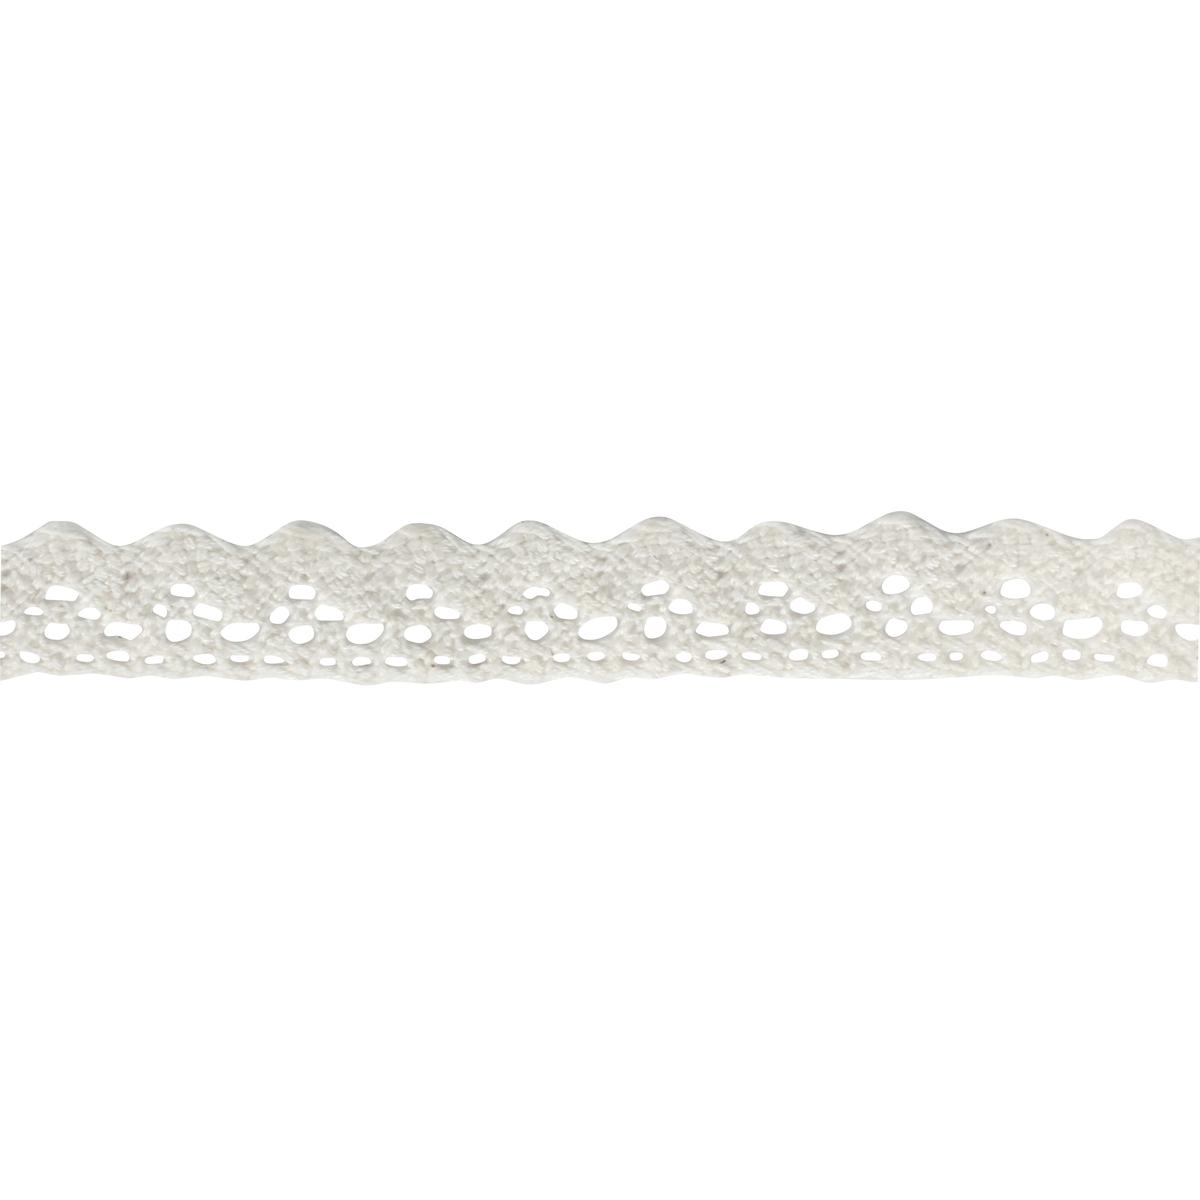 Ruban dentelle coton adhésif blanc 1,5 cm x 1 m